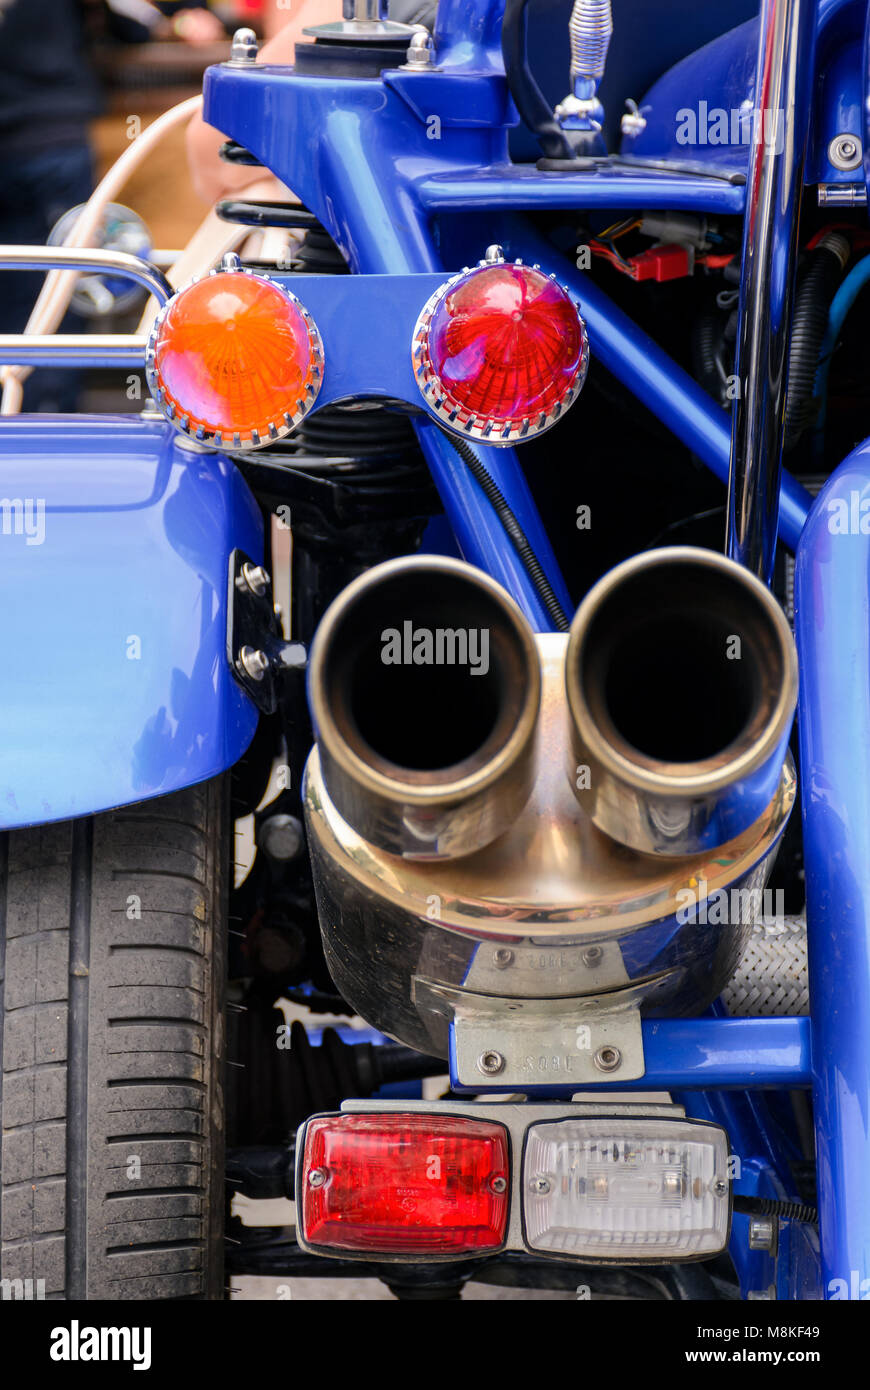 L'arrière d'une moto bleue. Joli détail tiré de lumières et les tuyaux d'échappement brillants Banque D'Images